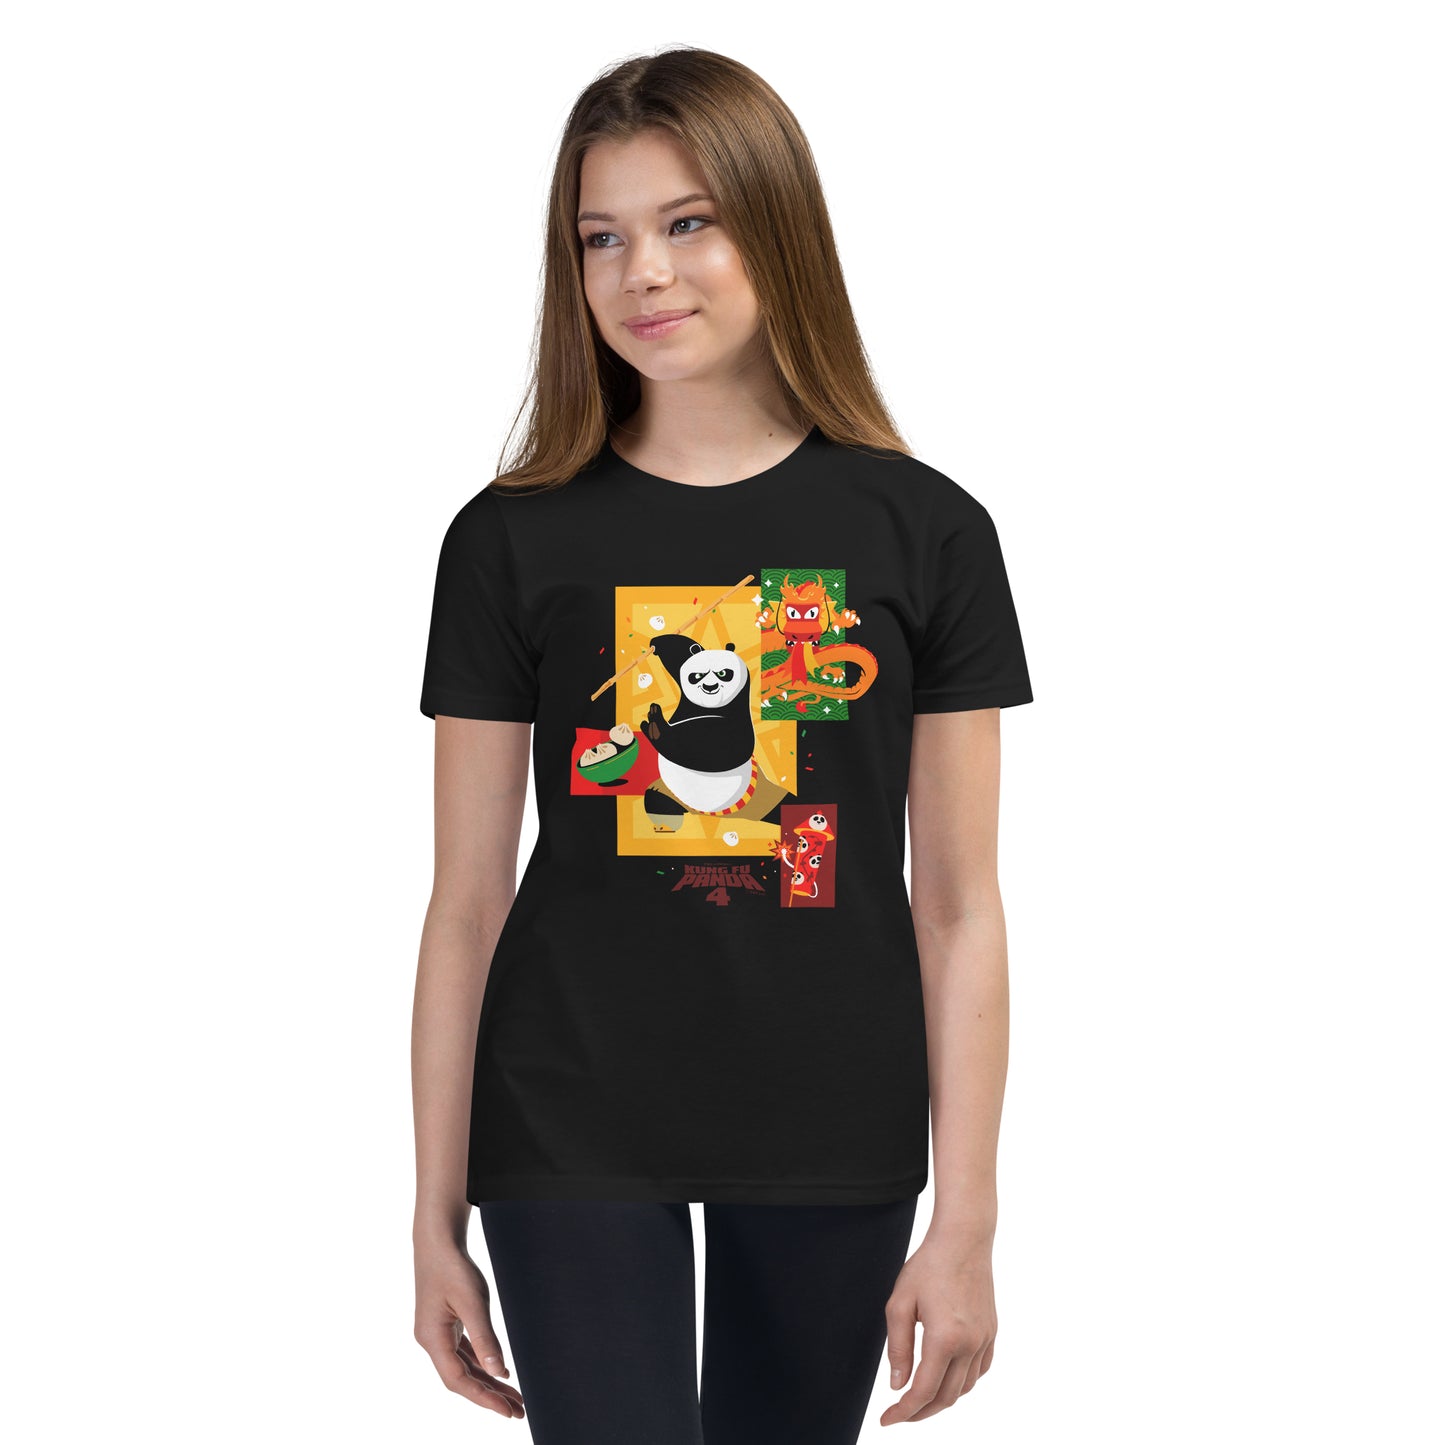 Kung Fu Panda 4 Starburst Kids T-Shirt